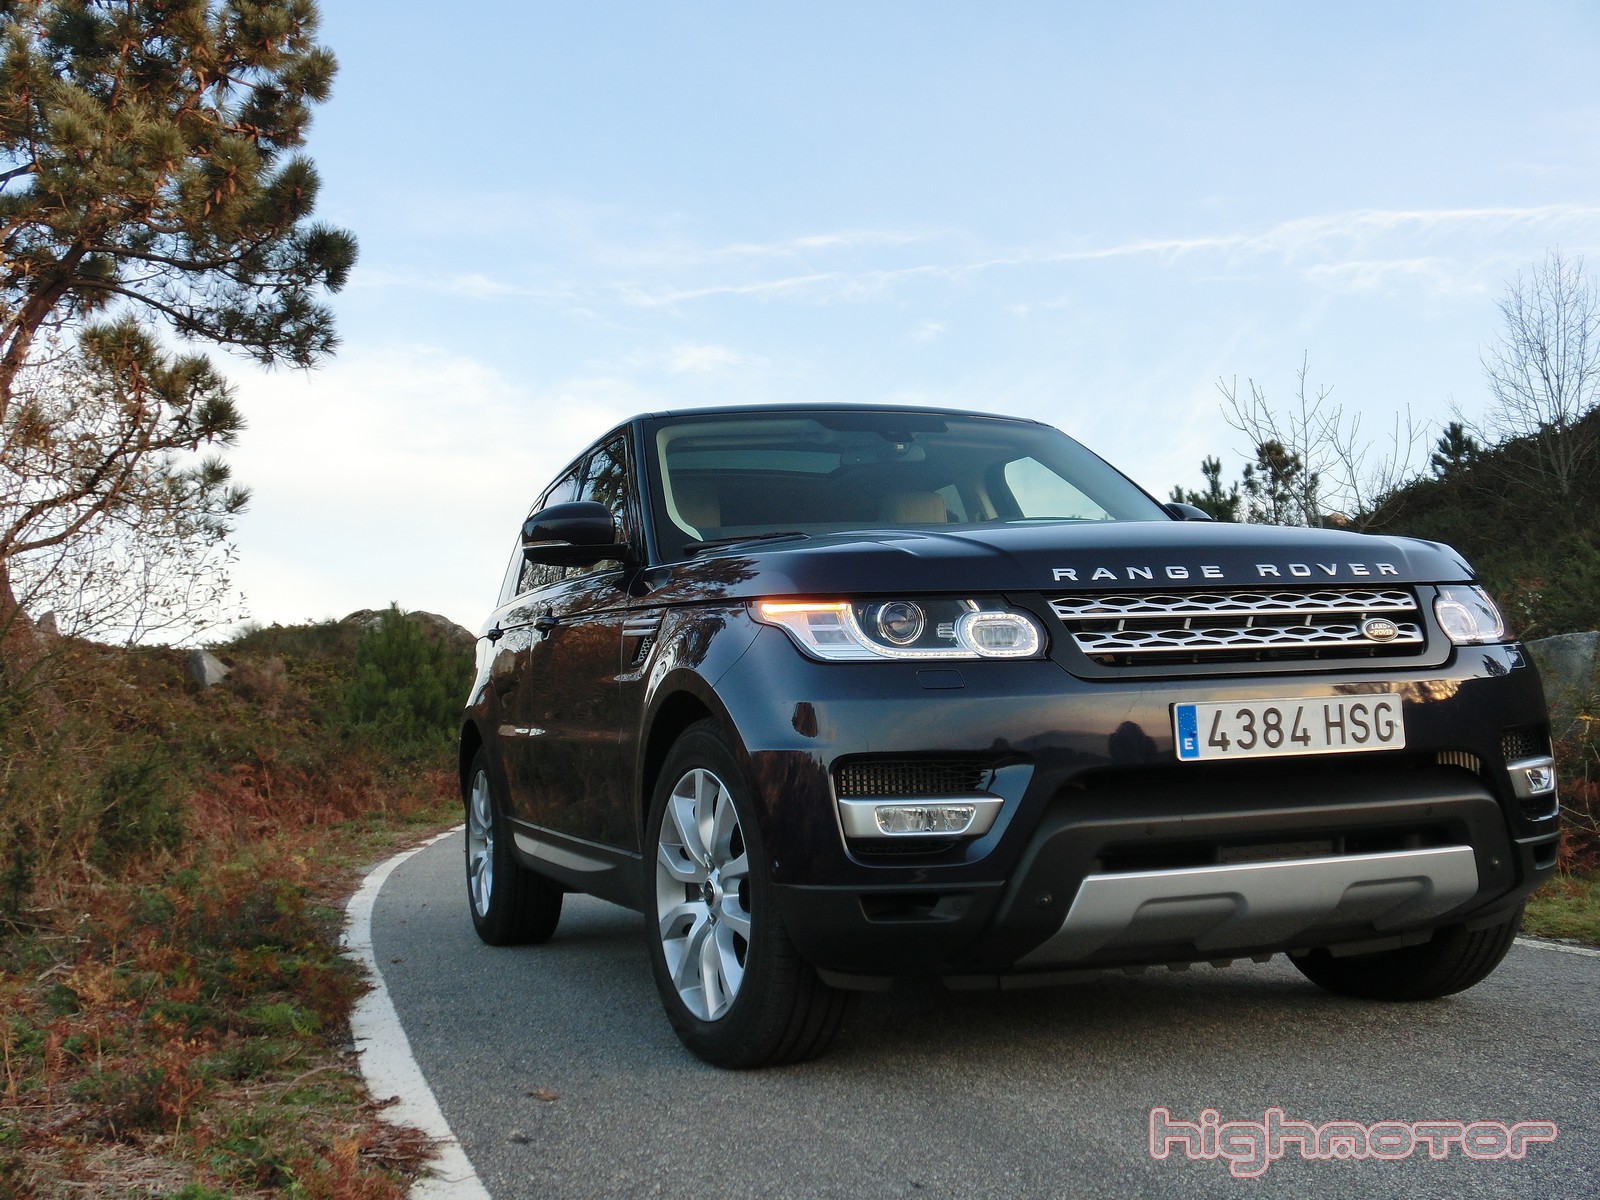 Land Rover Range Rover Sport 3.0 SDV6 292 CV HSE, prueba (Motor, prestaciones, comportamiento y consumo)